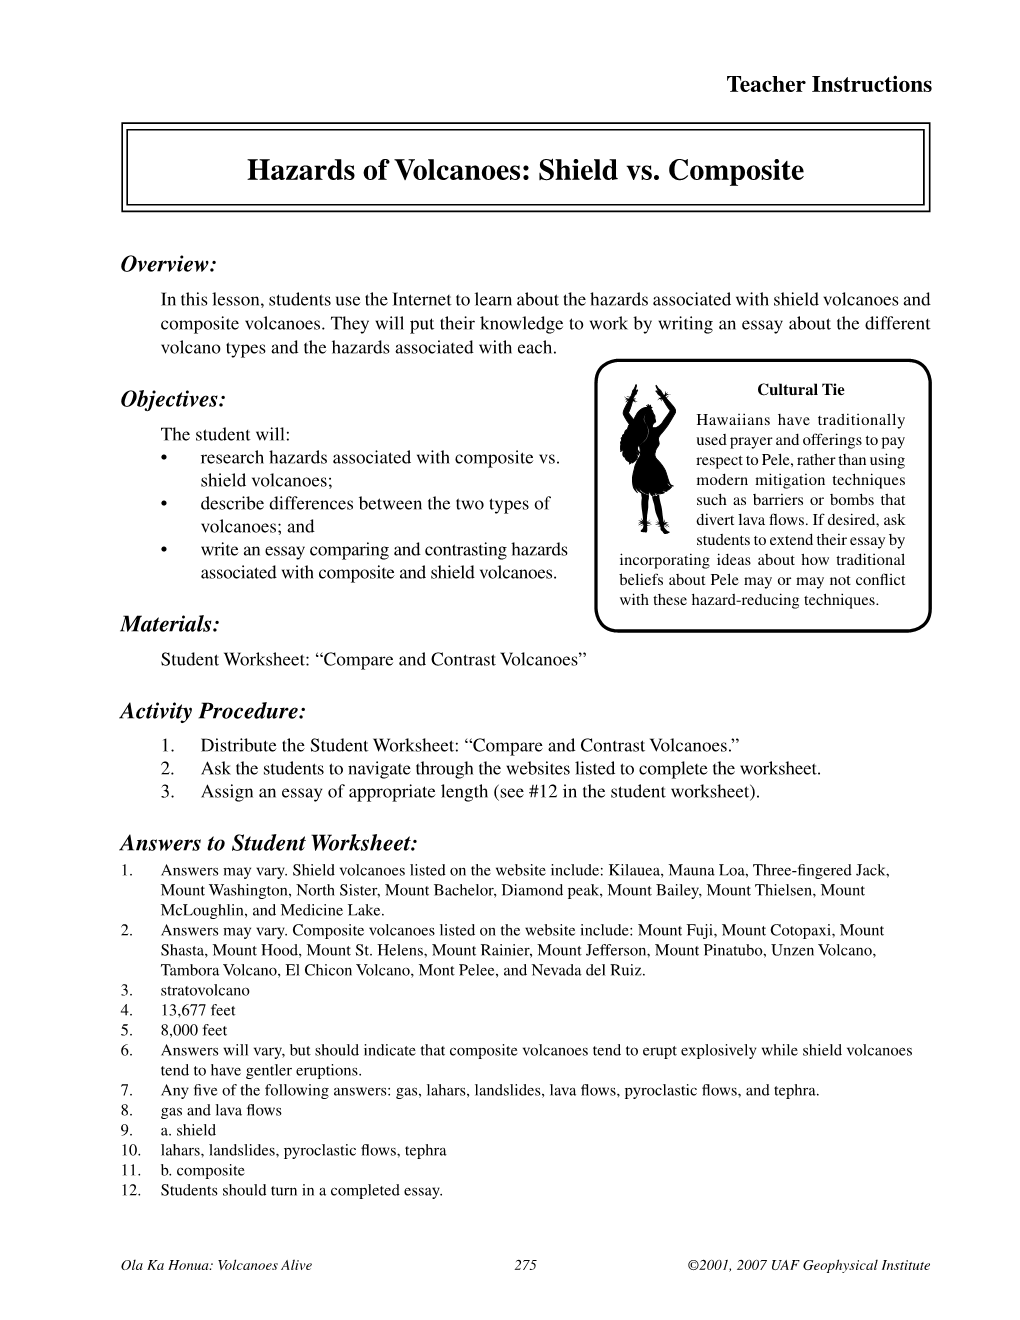 Hazards of Volcanoes: Shield Vs. Composite